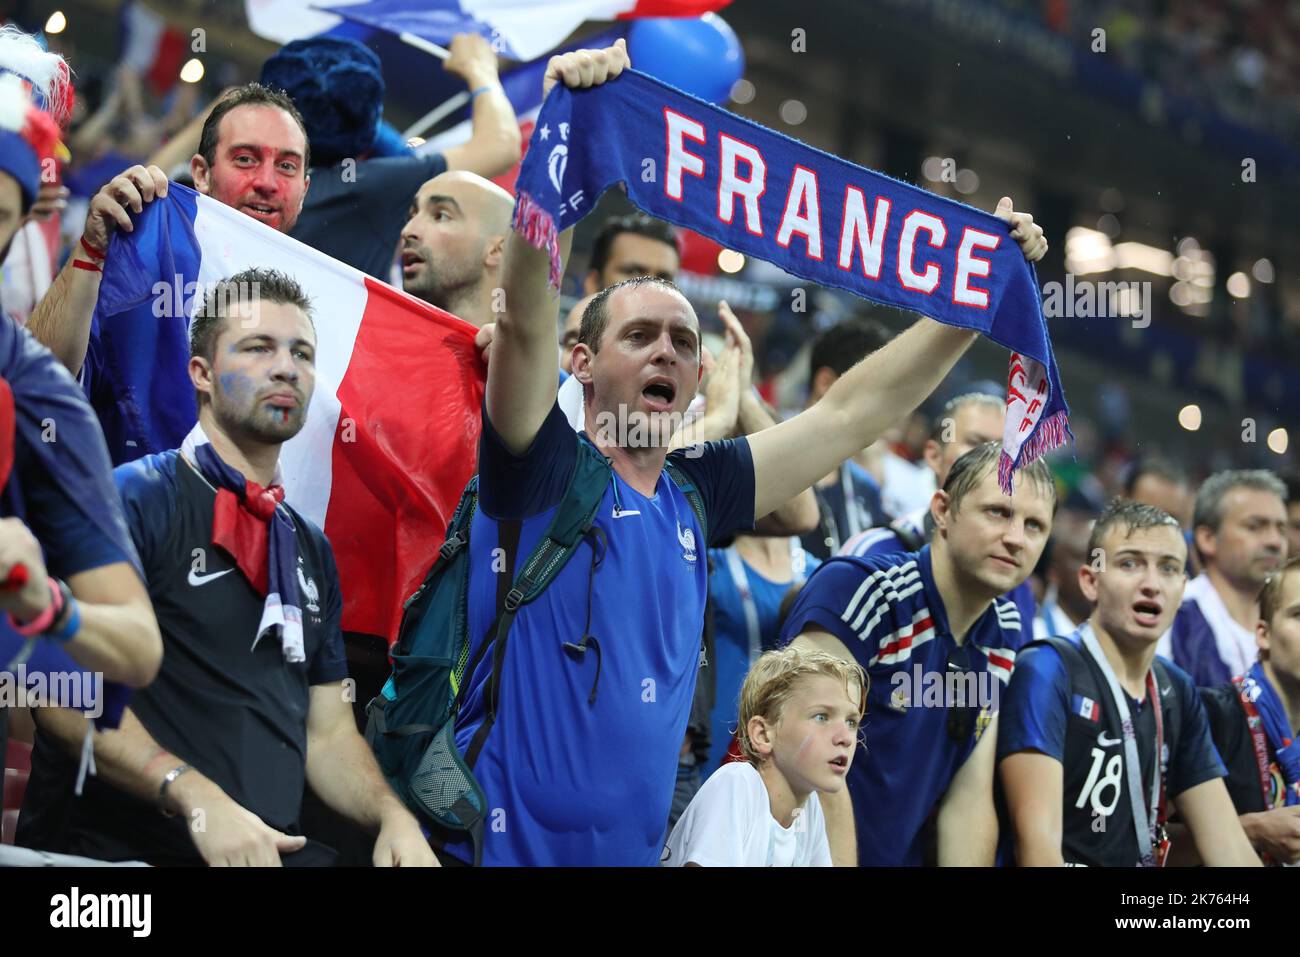 Coppa del mondo FIFA Russia 2018, finale Calcio Match Francia contro Croazia, la Francia è il nuovo campione del mondo. La Francia ha vinto la Coppa del mondo per la seconda volta 4-2 contro la Croazia. Nella foto: Tifosi francesi nello stadio Foto Stock